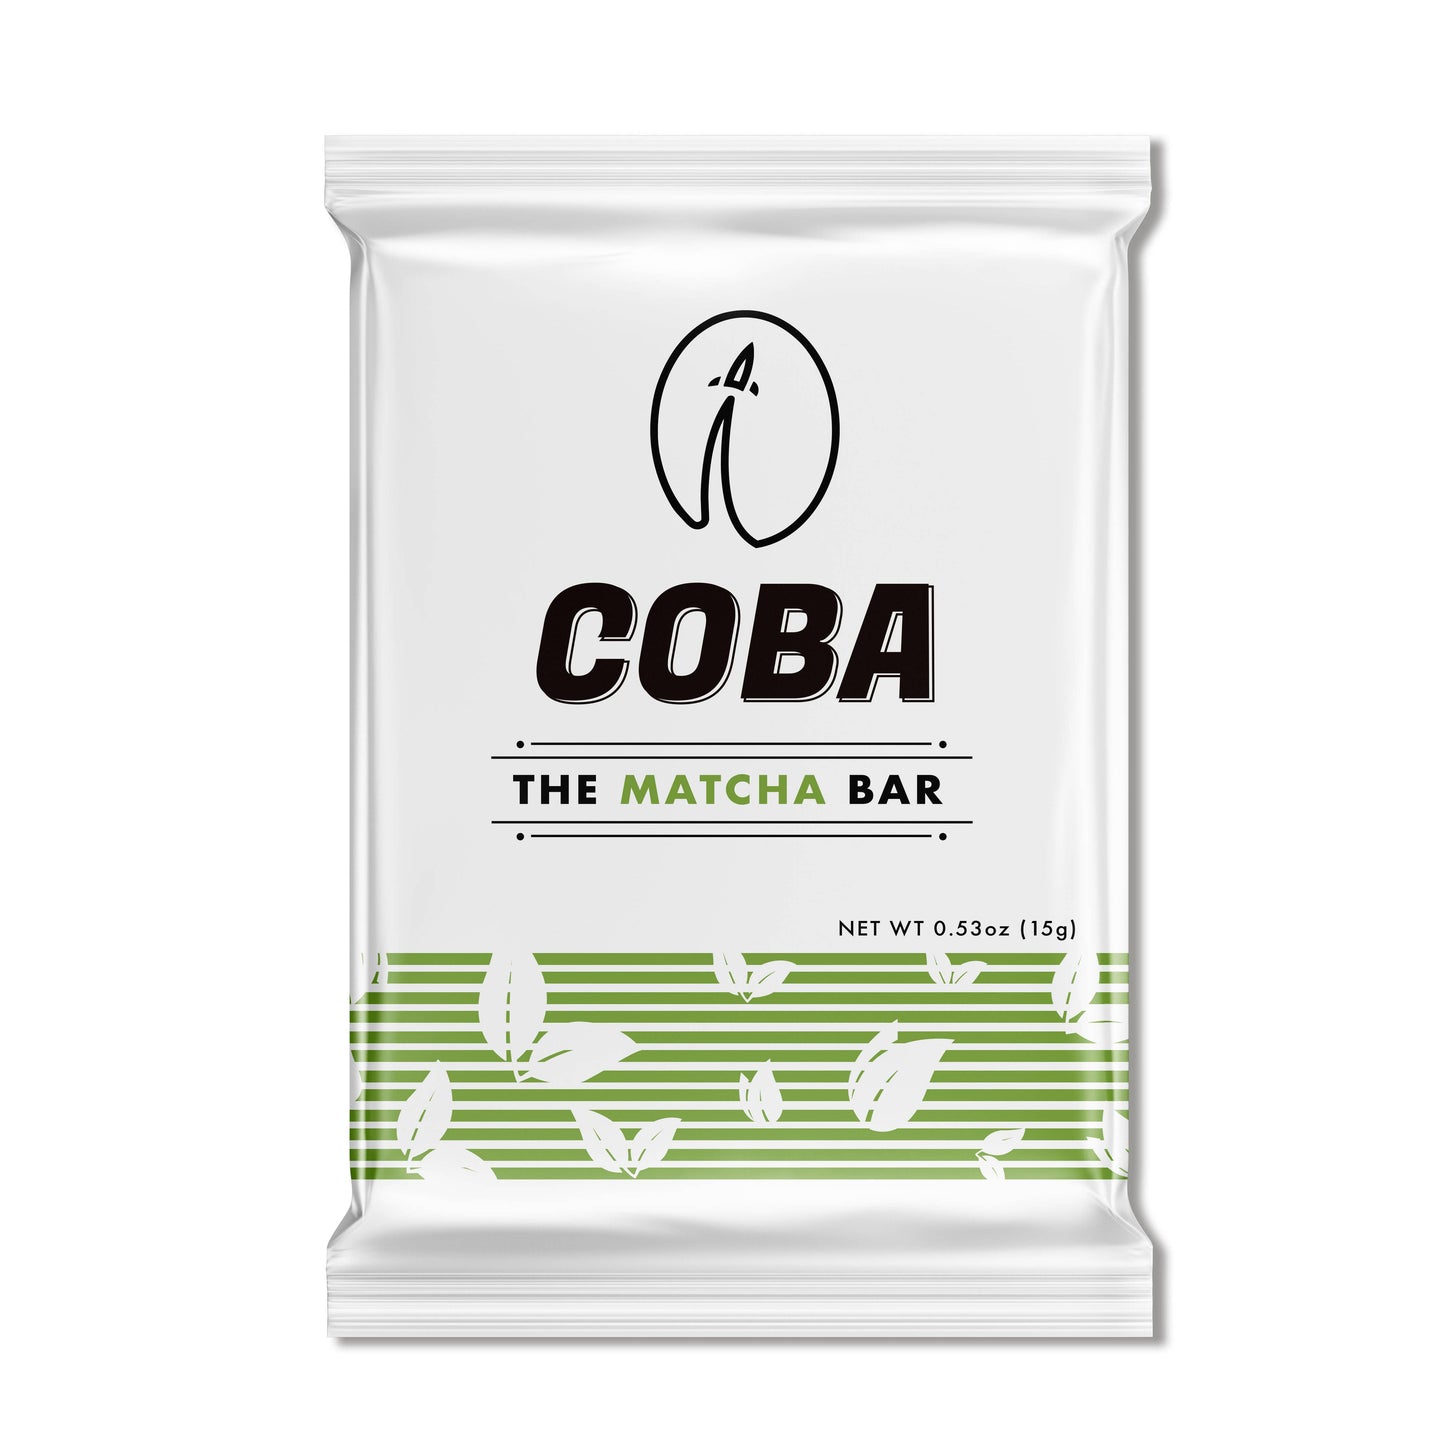 COBA, The Matcha Bar (20 per case)